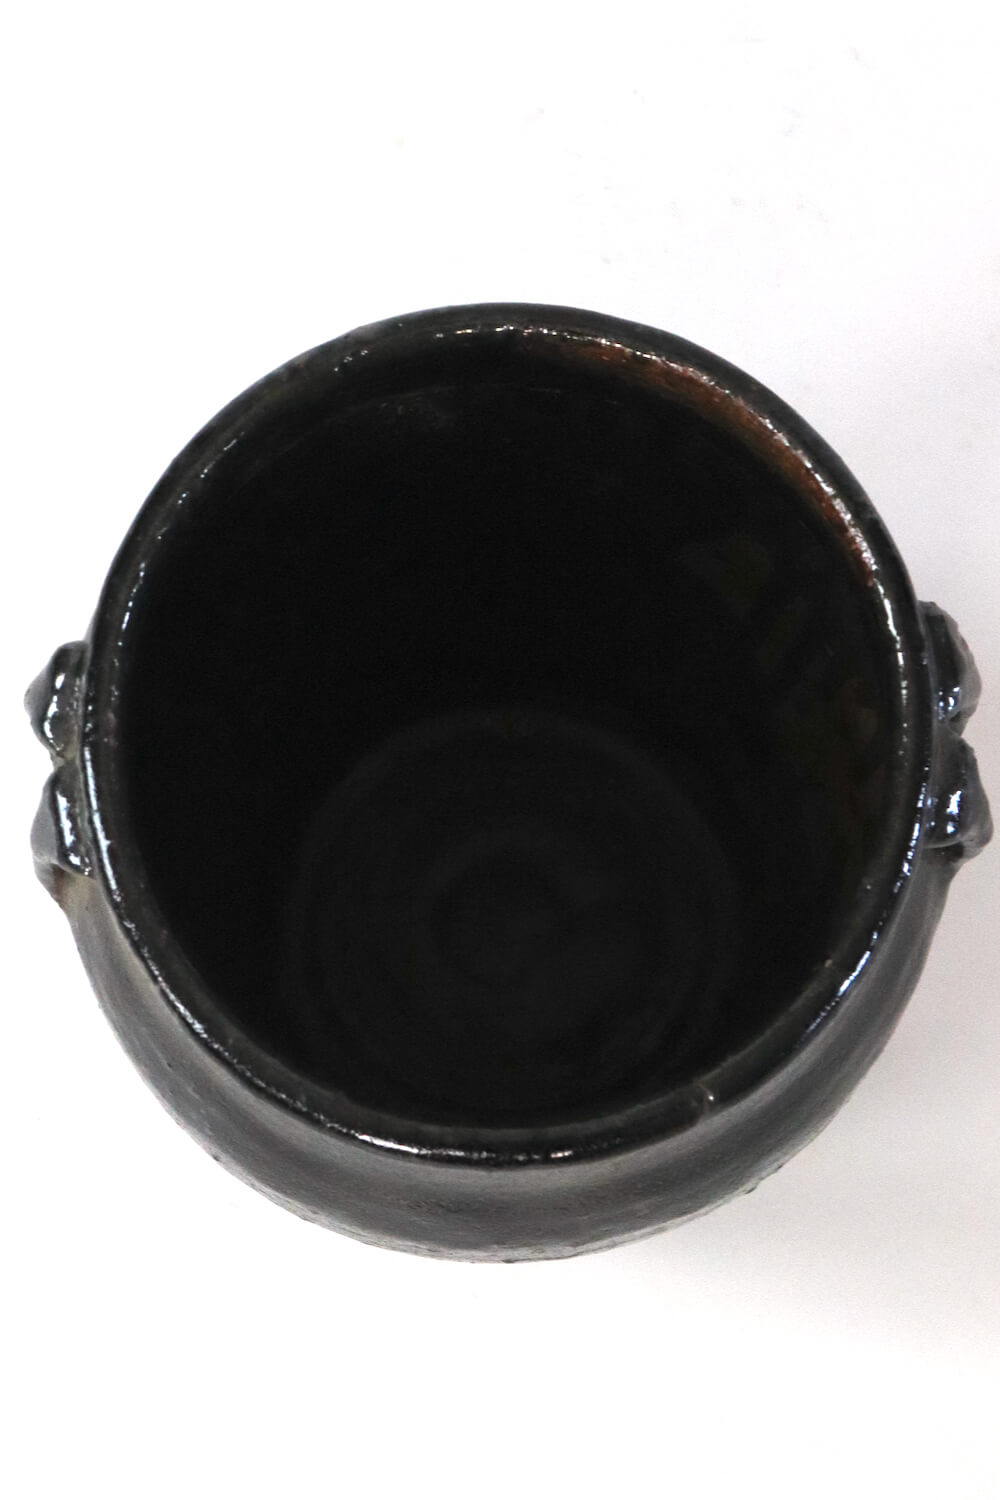 Chinesische Vase antik schwarz, 25xØ22